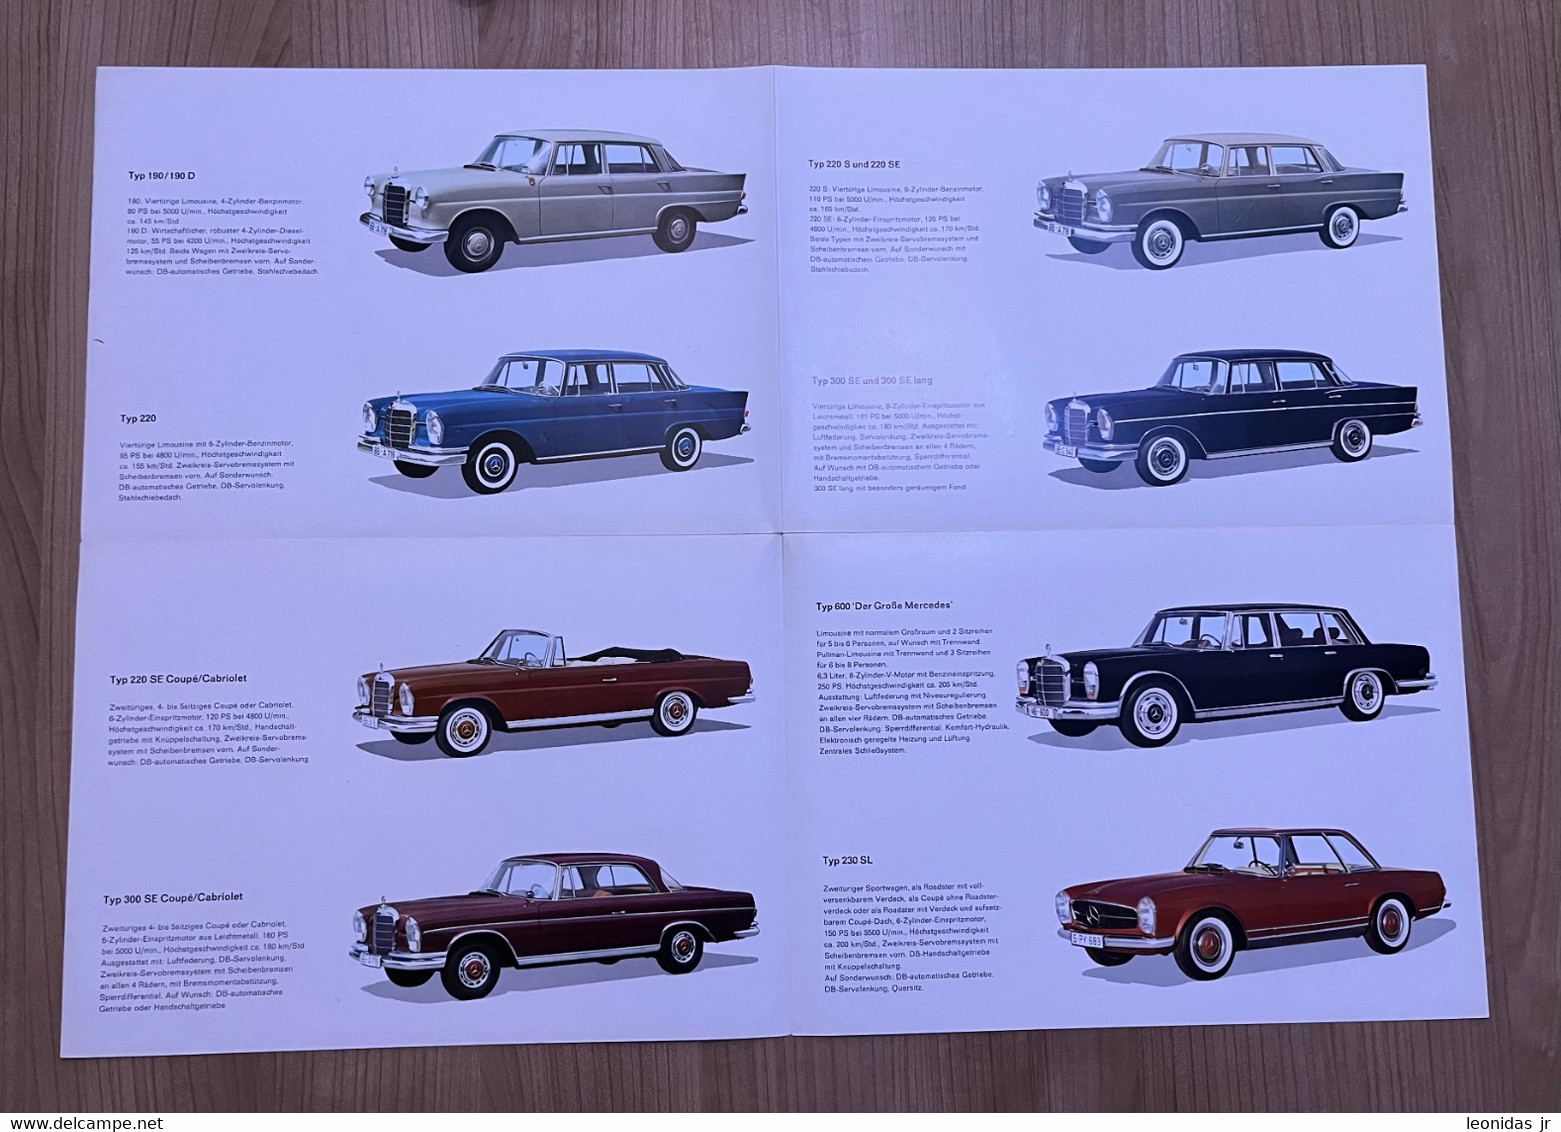 Mercedes - Benz Personenwagen - Catalogue - Catalogues